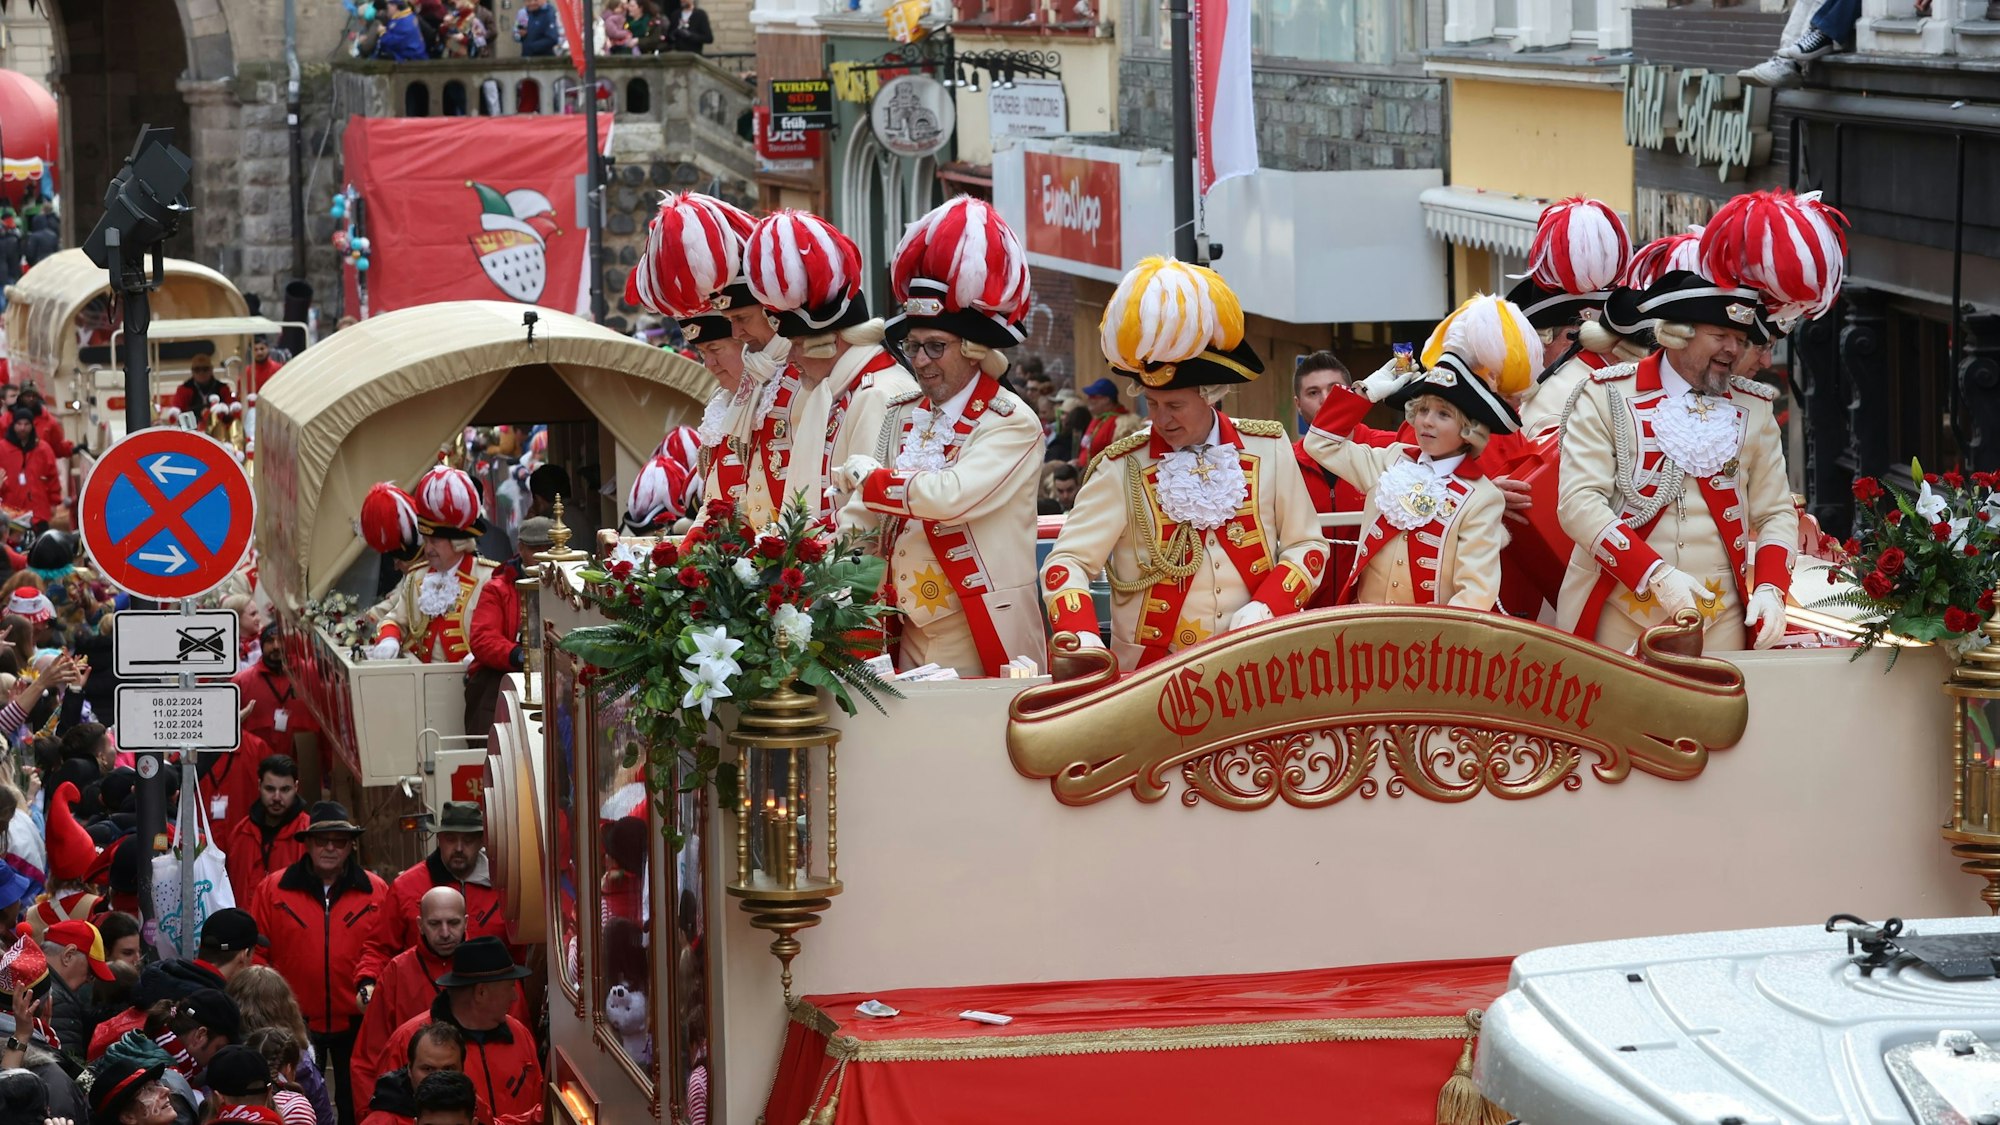 Wenn die Prinzengarde über die Severinstraße rollt, dauert es nicht mehr lange bis das närrische Spektakel vorüber sind. Sie bildet die letzte Gruppe des Zuges, denn es handelt sich um das Begleitkorps des Prinzen Karneval. 





